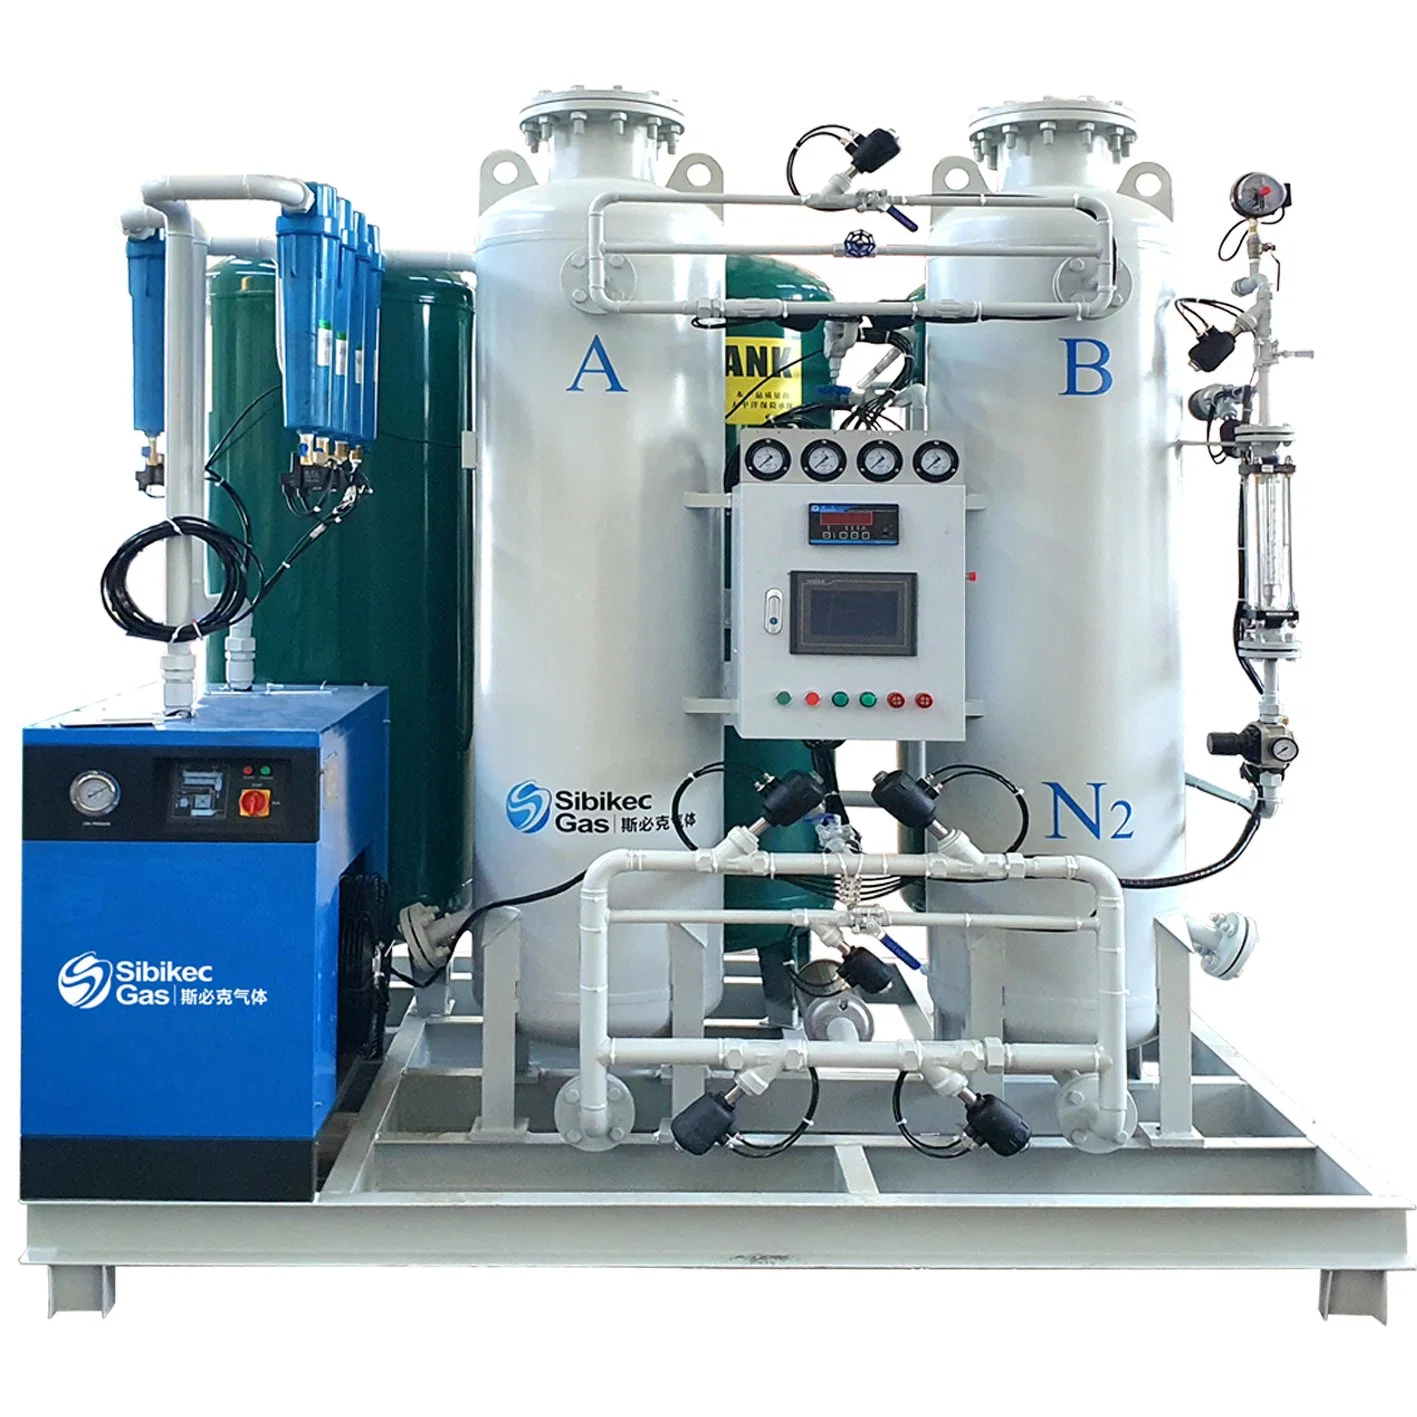 ماكينة صناعة مولدات النيتروجين PSA N2 الصناعية